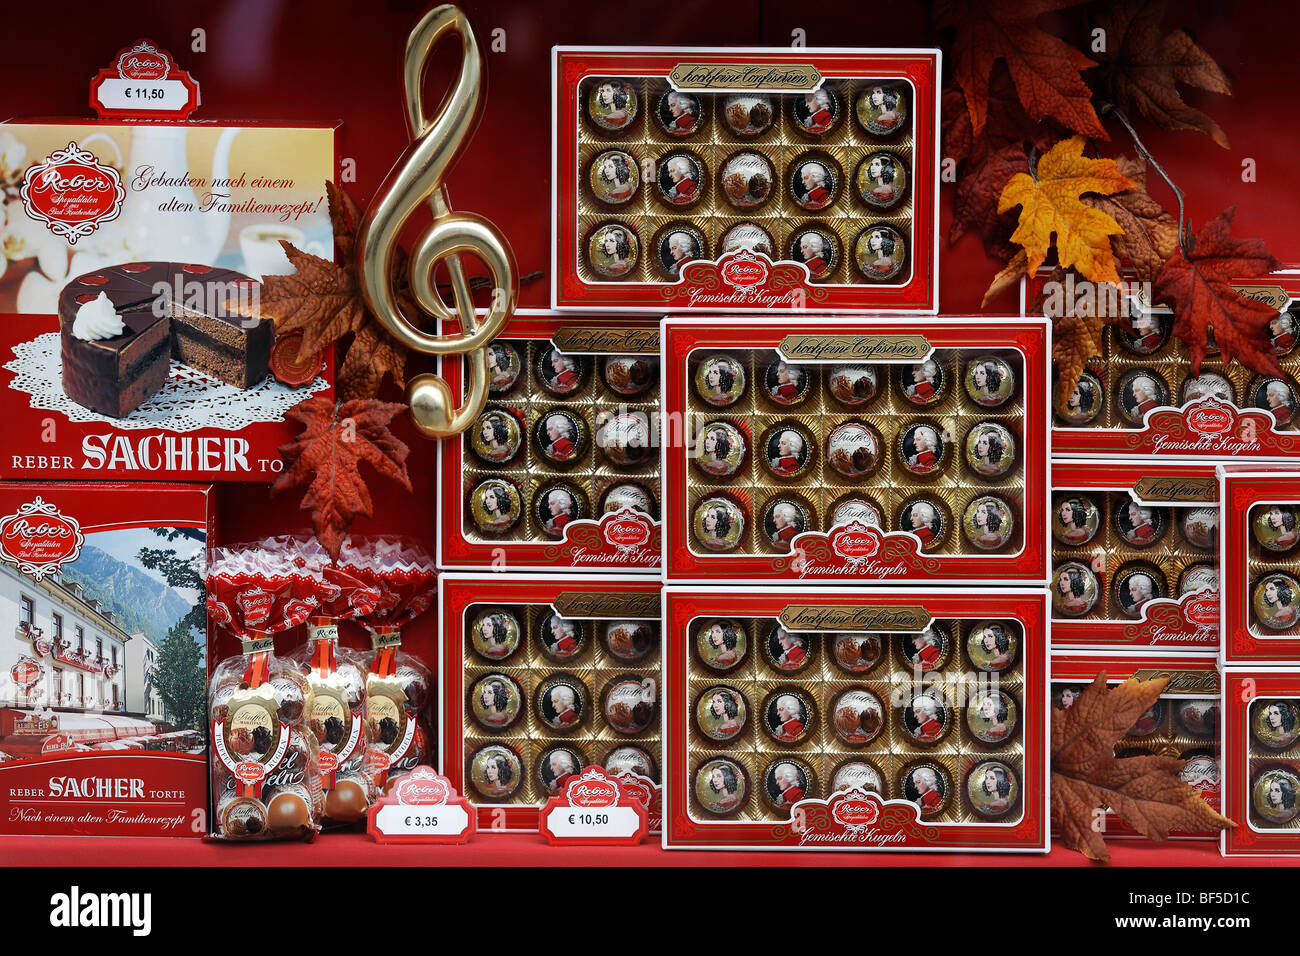 Magasin de bonbons, fenêtre d'affichage, de véritables pralines Reber Mozartkugeln, Alter Markt, Salzbourg, Autriche, Europe Banque D'Images